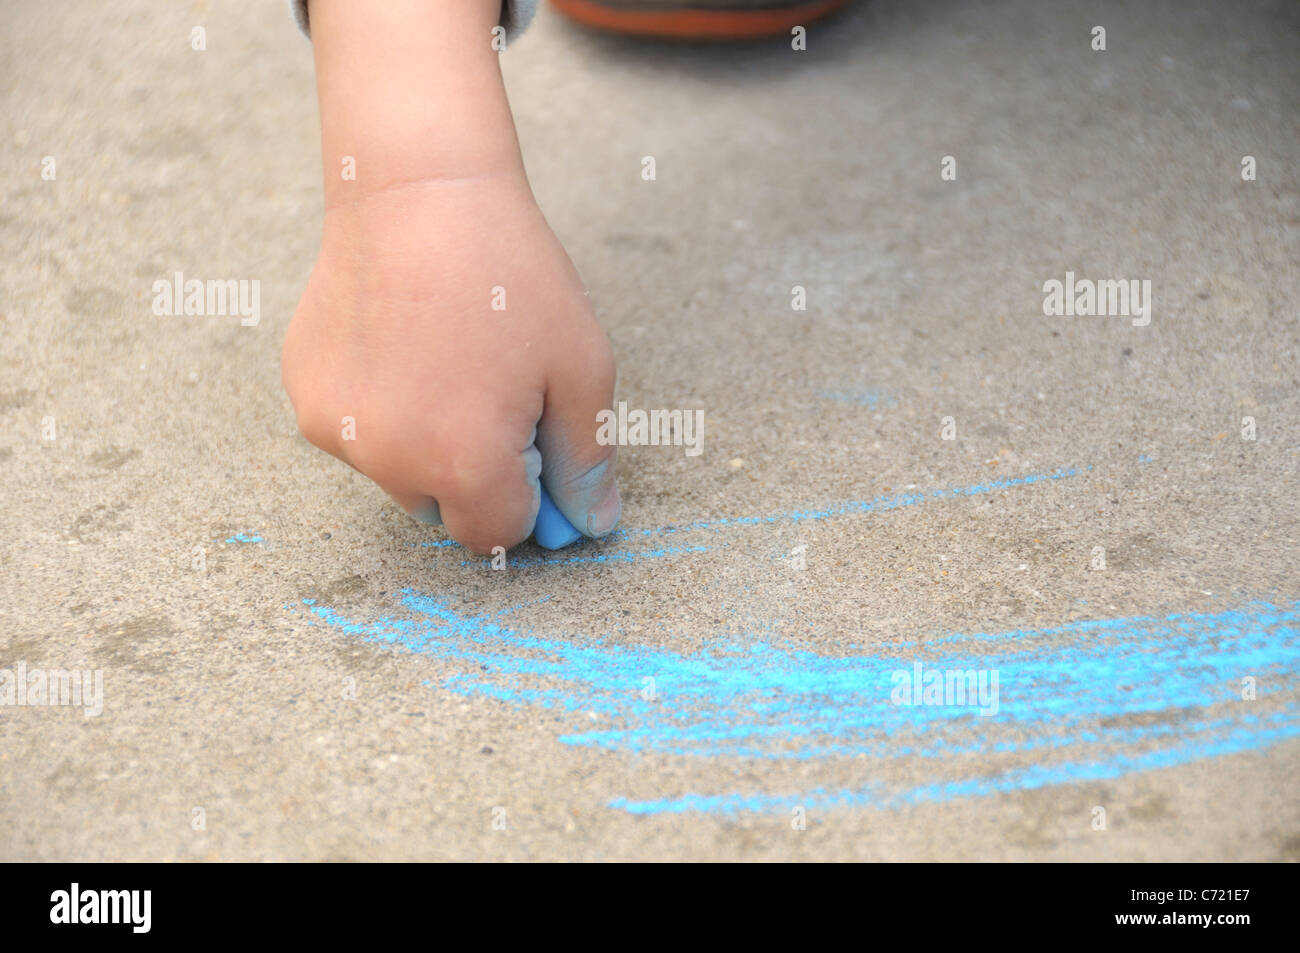 Un détail de la main d'un enfant tenant un crayon craie bleu dimensions piscine Banque D'Images